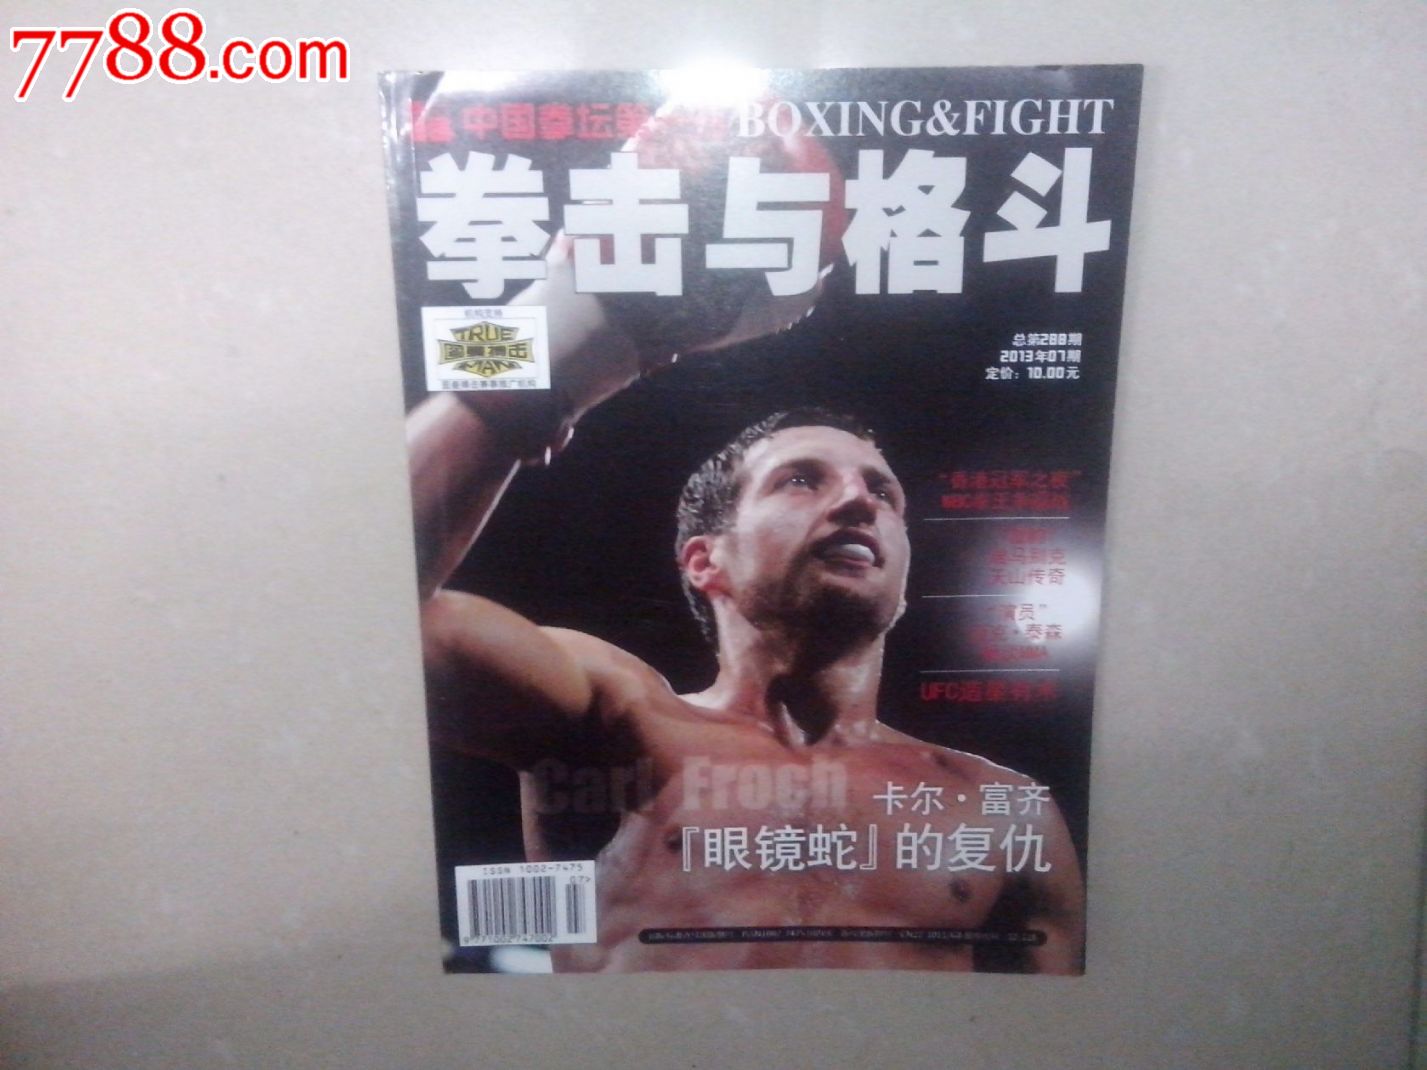 拳击与格斗杂志-价格:8元-se27270691-新版书